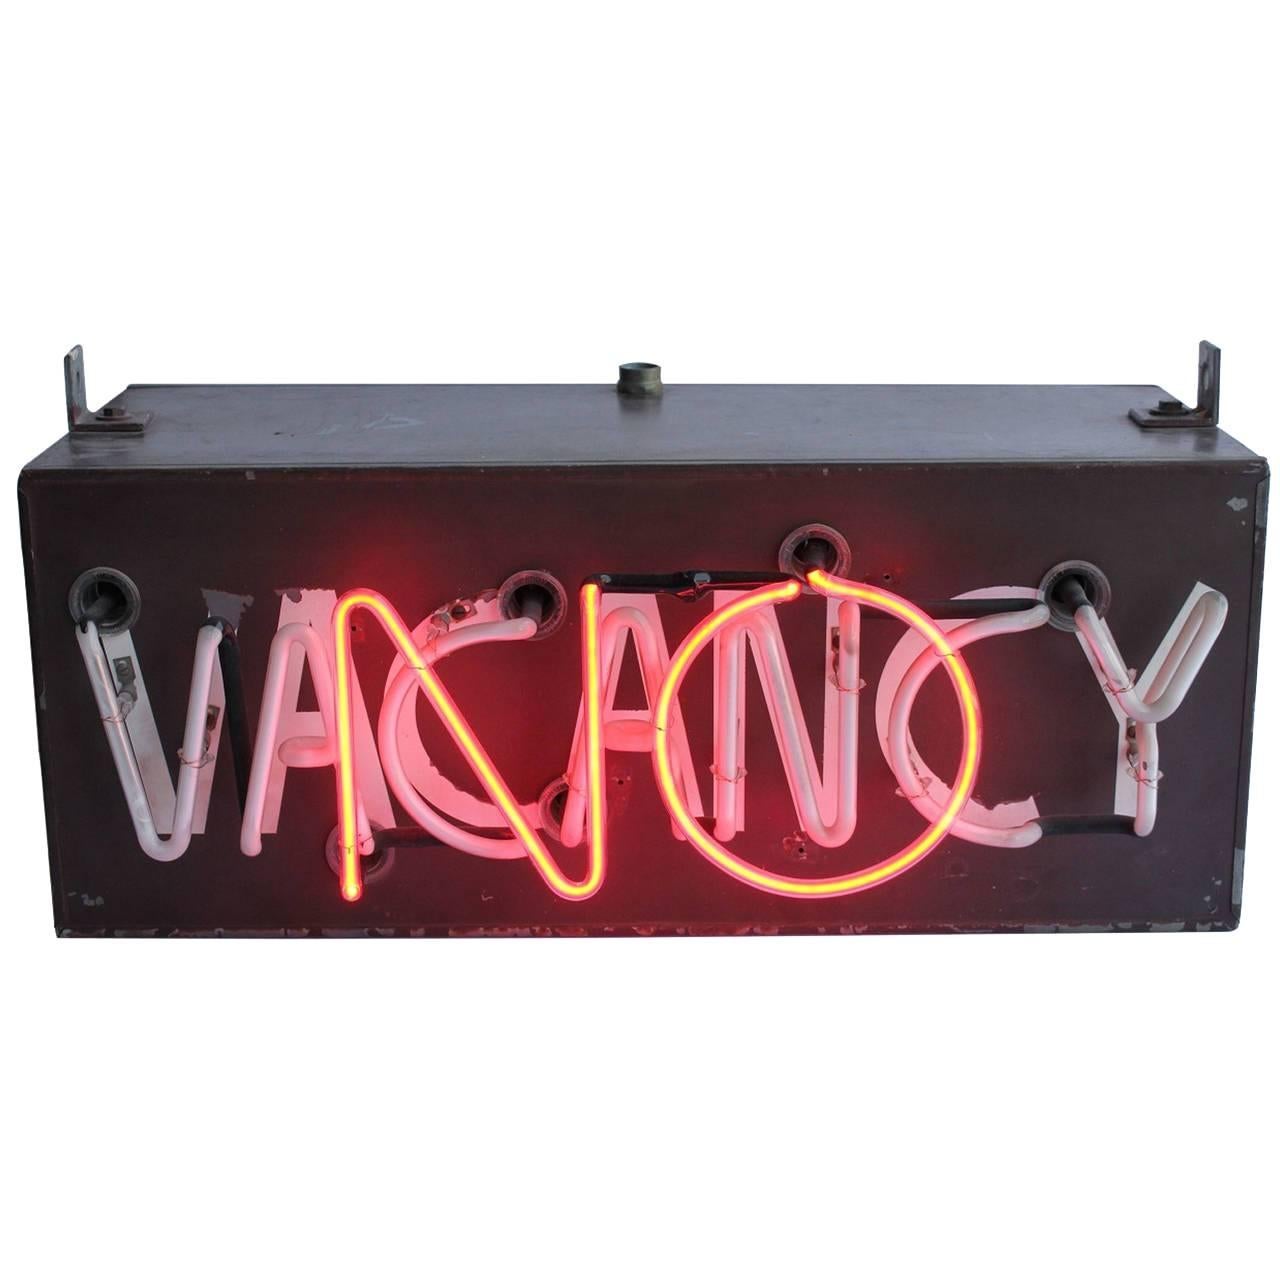 Original 1930s Neon Motel "No Vacancy" Sign